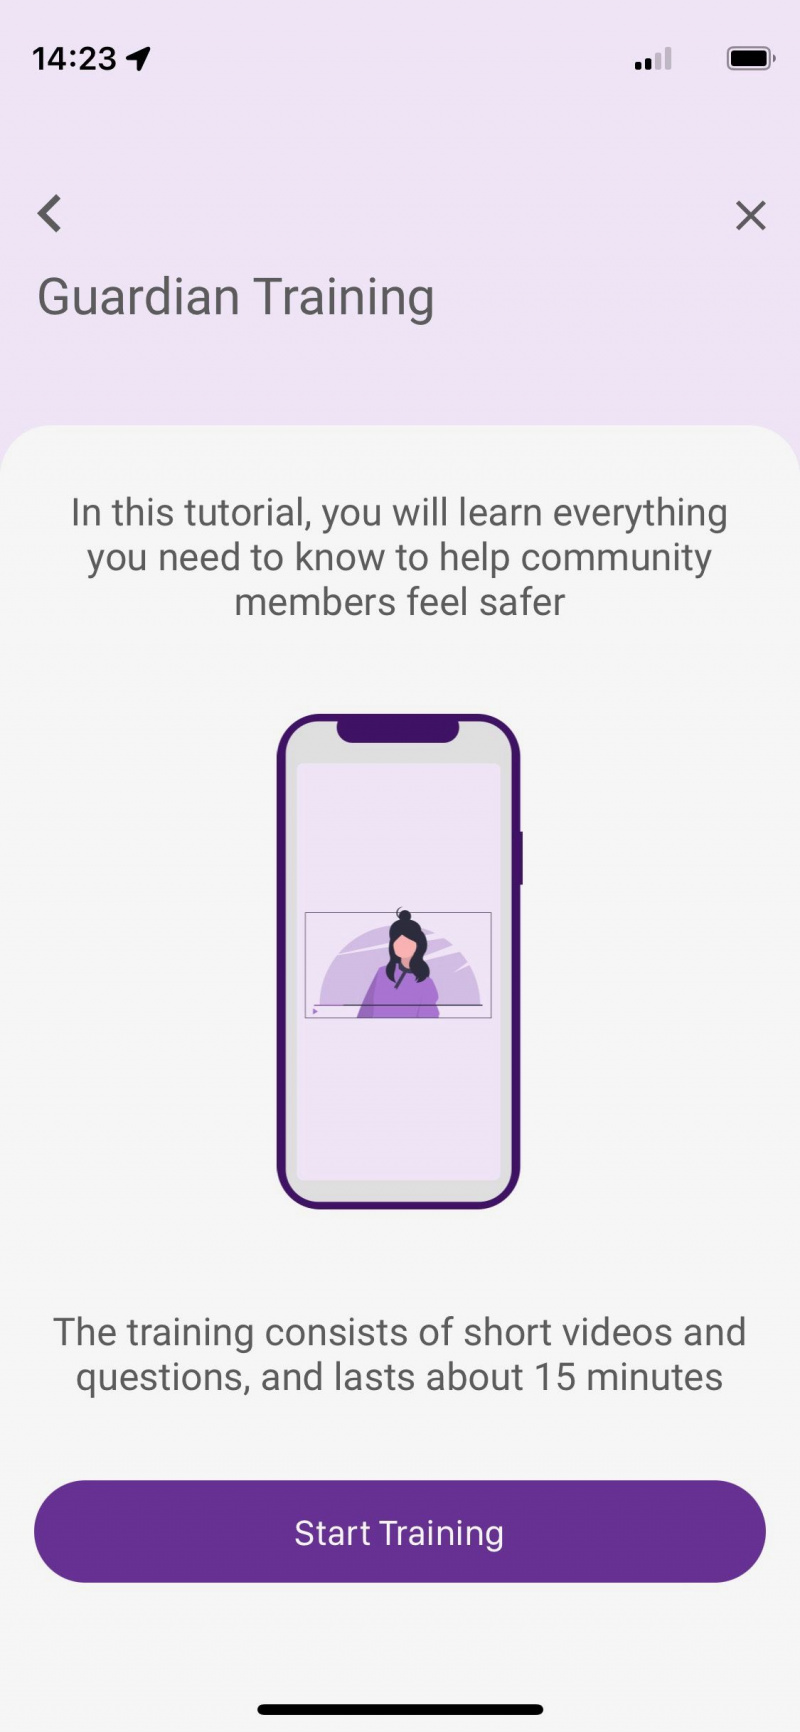   Captura de pantalla de la aplicación SafeUP que muestra una introducción a la formación de guardianes